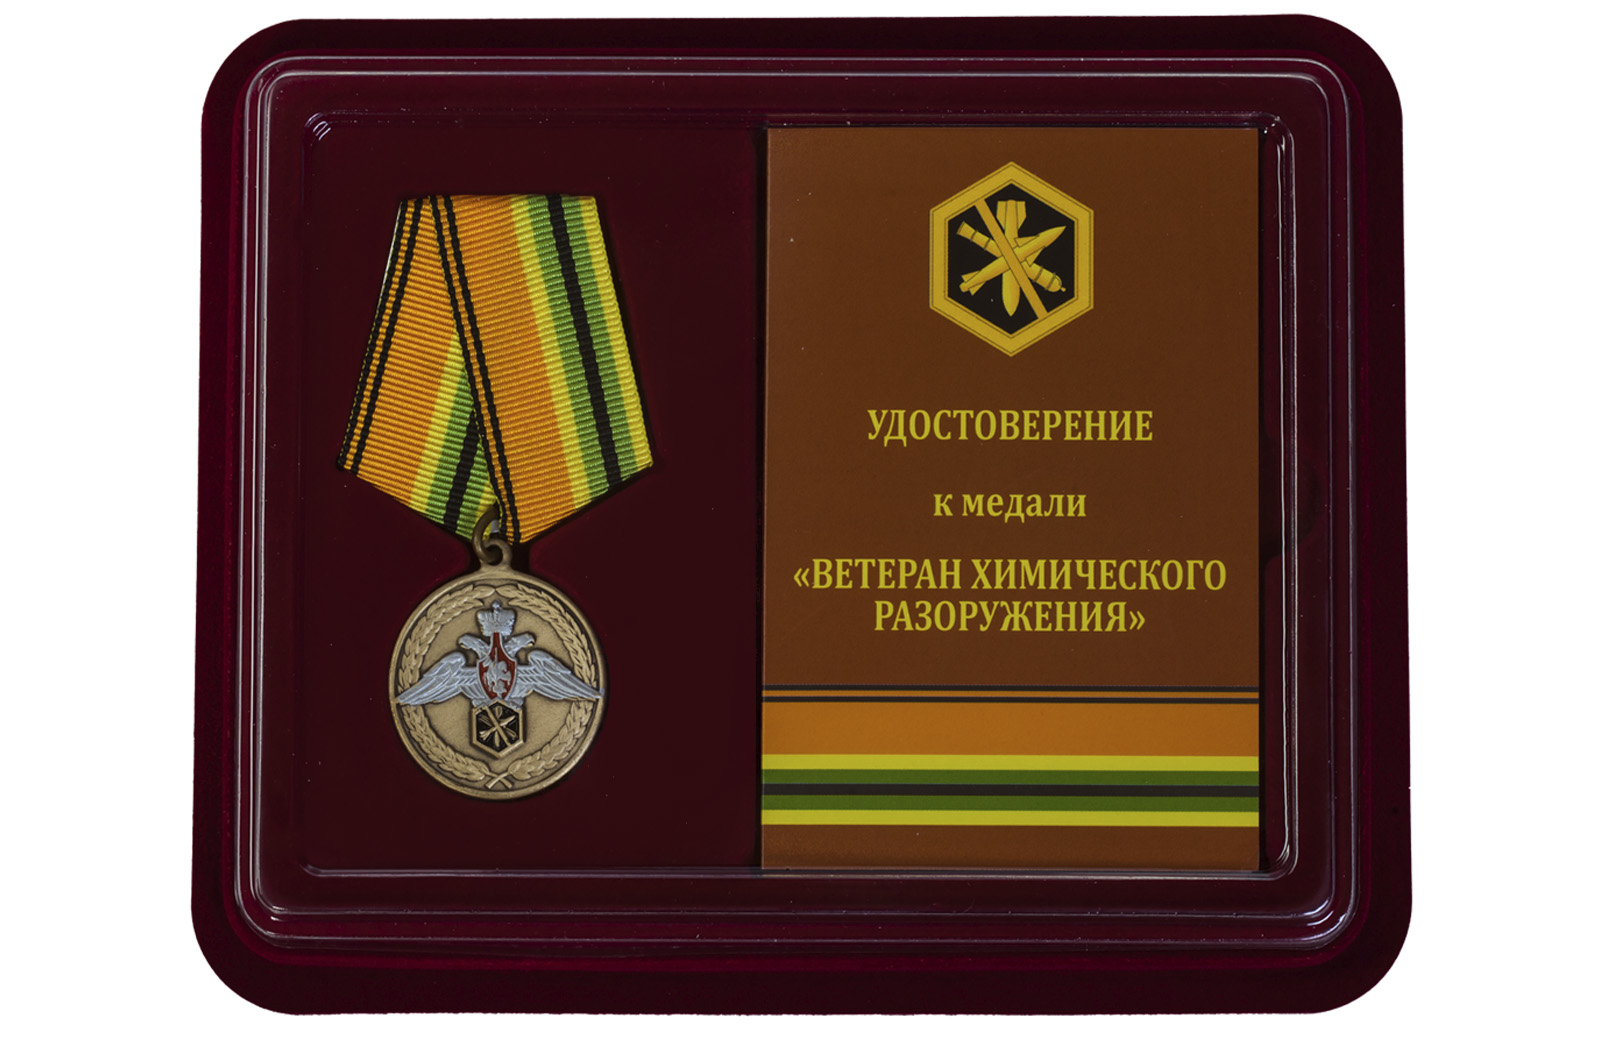 Купить медаль МО РФ Ветеран химического разоружения в подарок